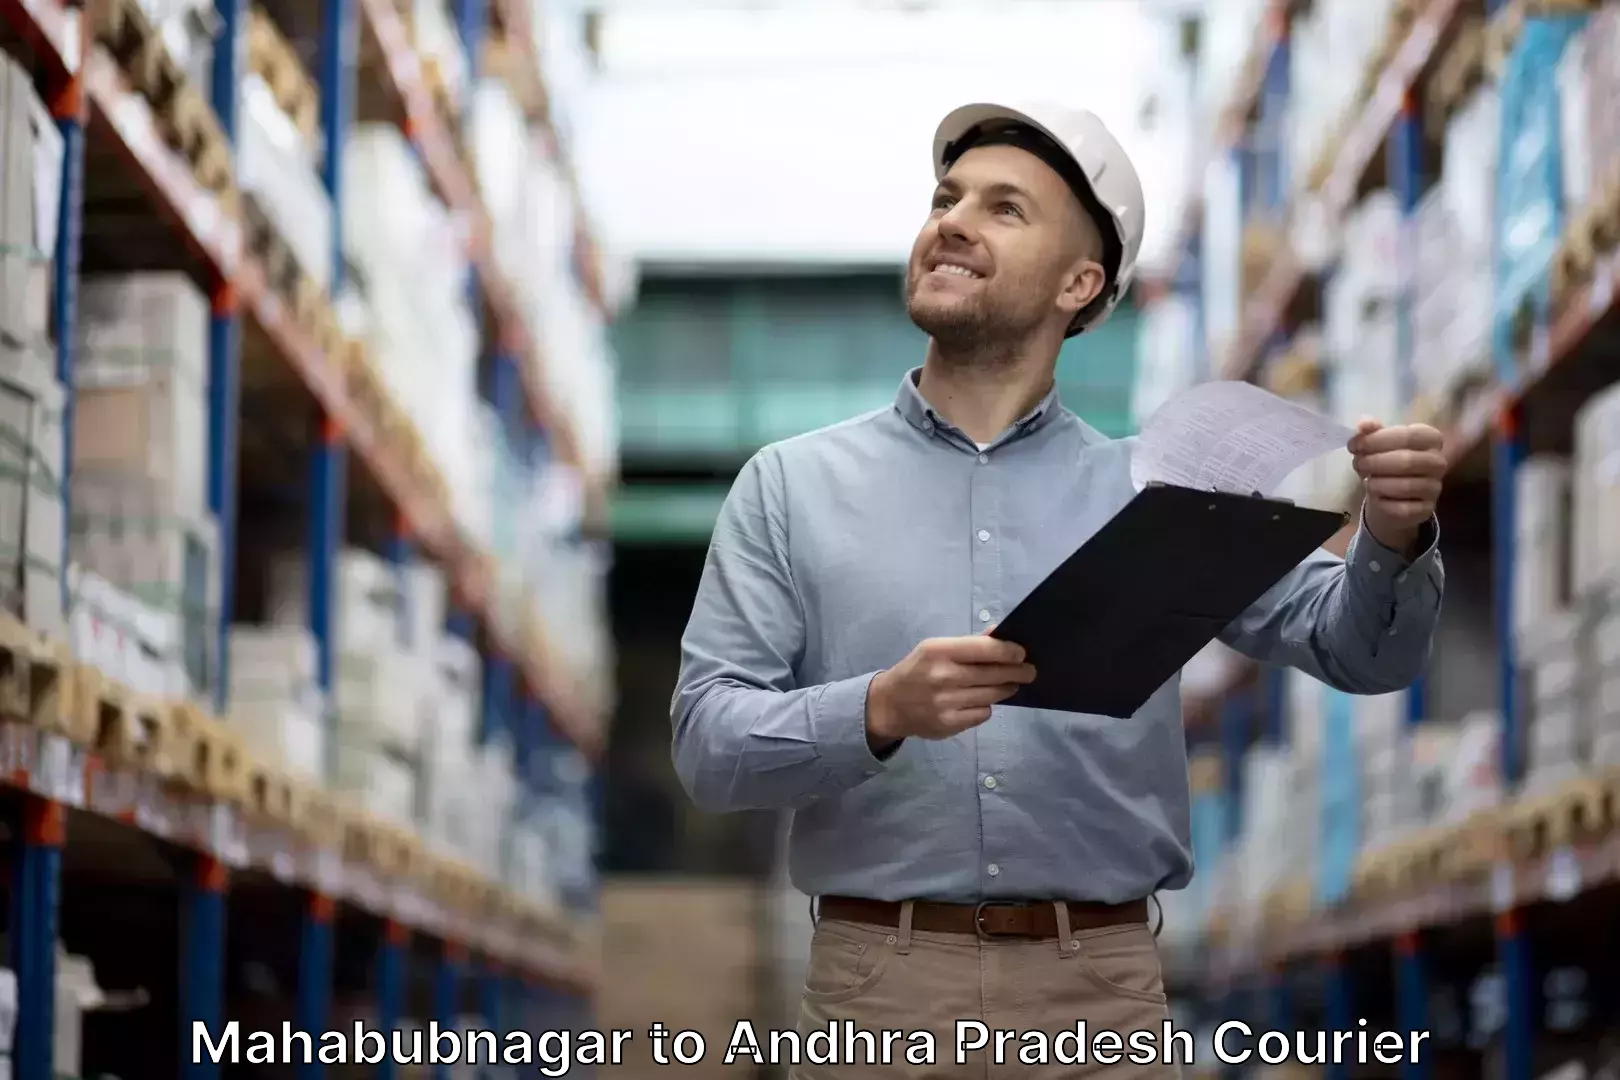 Baggage shipping experts in Mahabubnagar to Andhra Pradesh